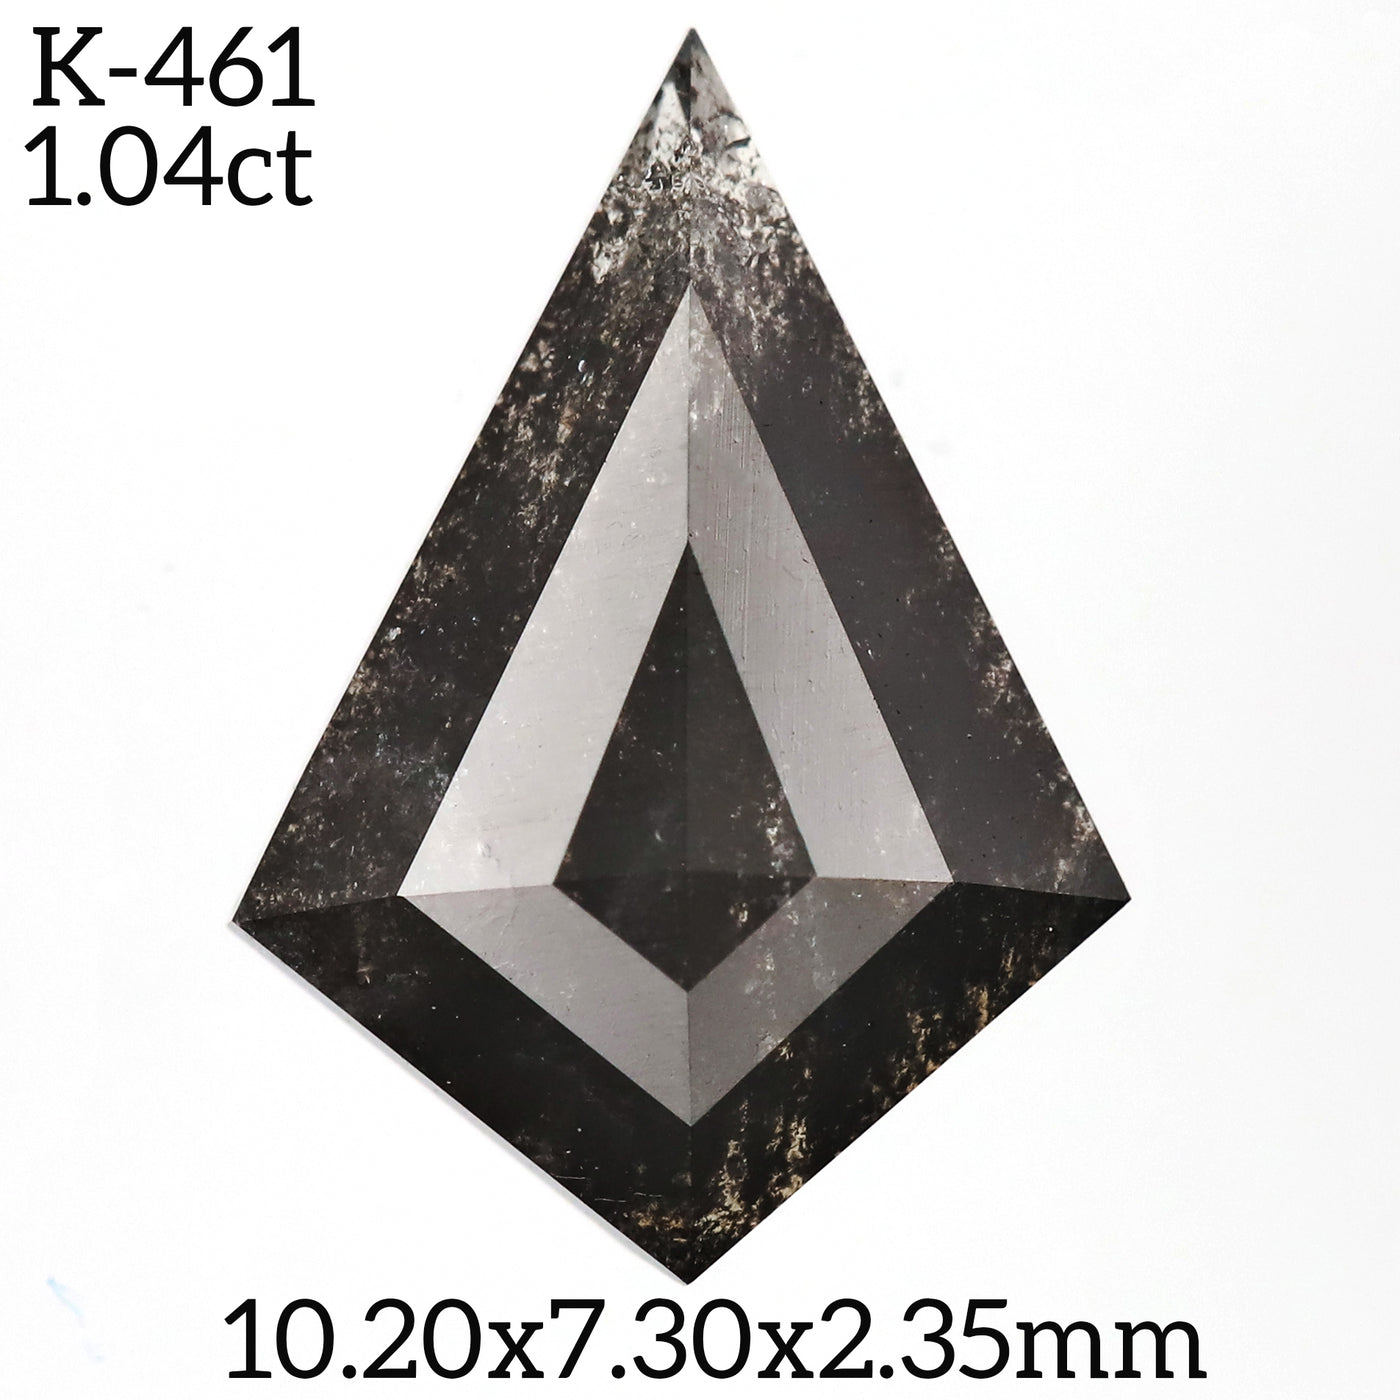 K461 - Salt and pepper kite diamond